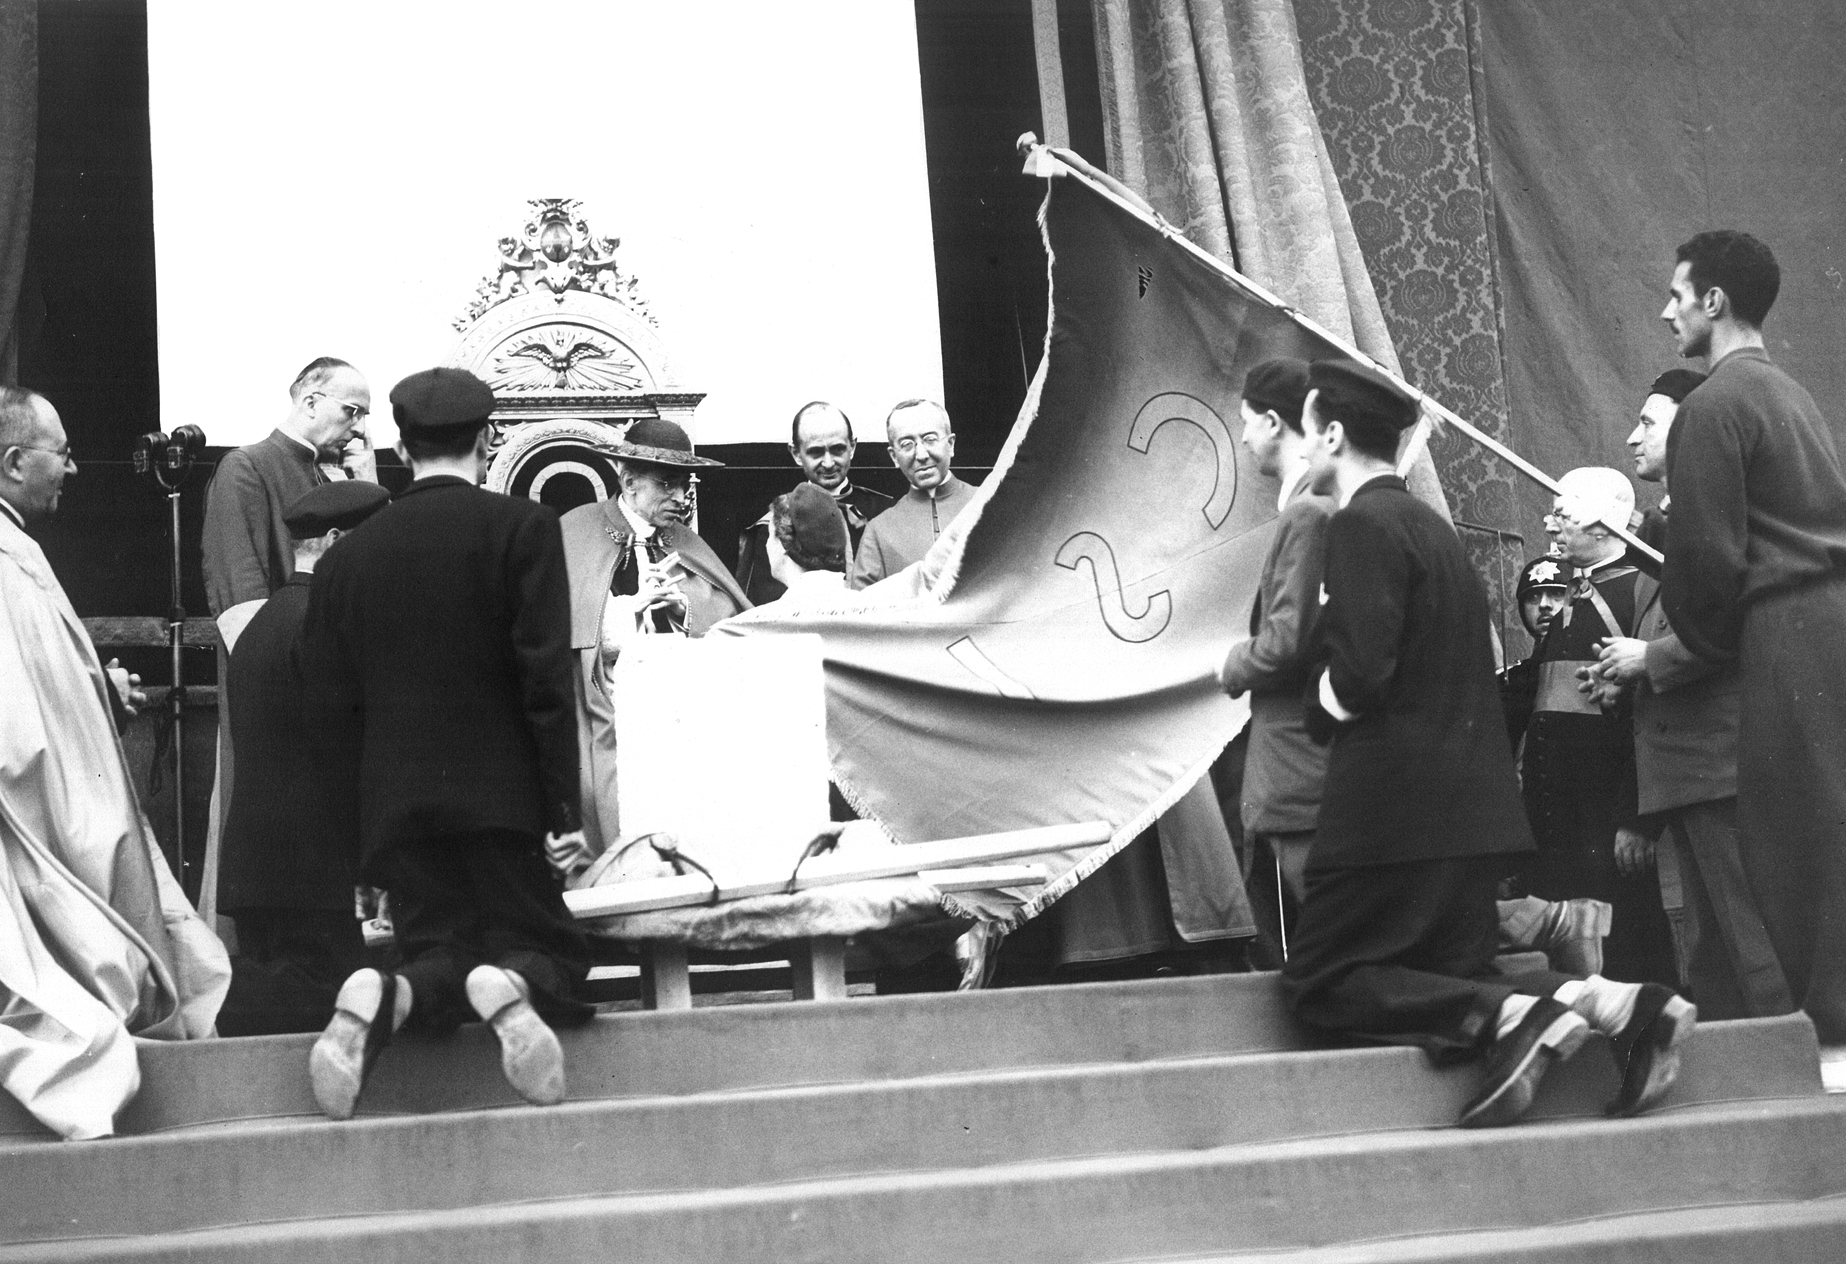 Una foto d'epoca, in bianco e nero. Una grande bandiera entra dalla destra verso il papa seduto. Sulla sinistra, un uomo inginocchiato 